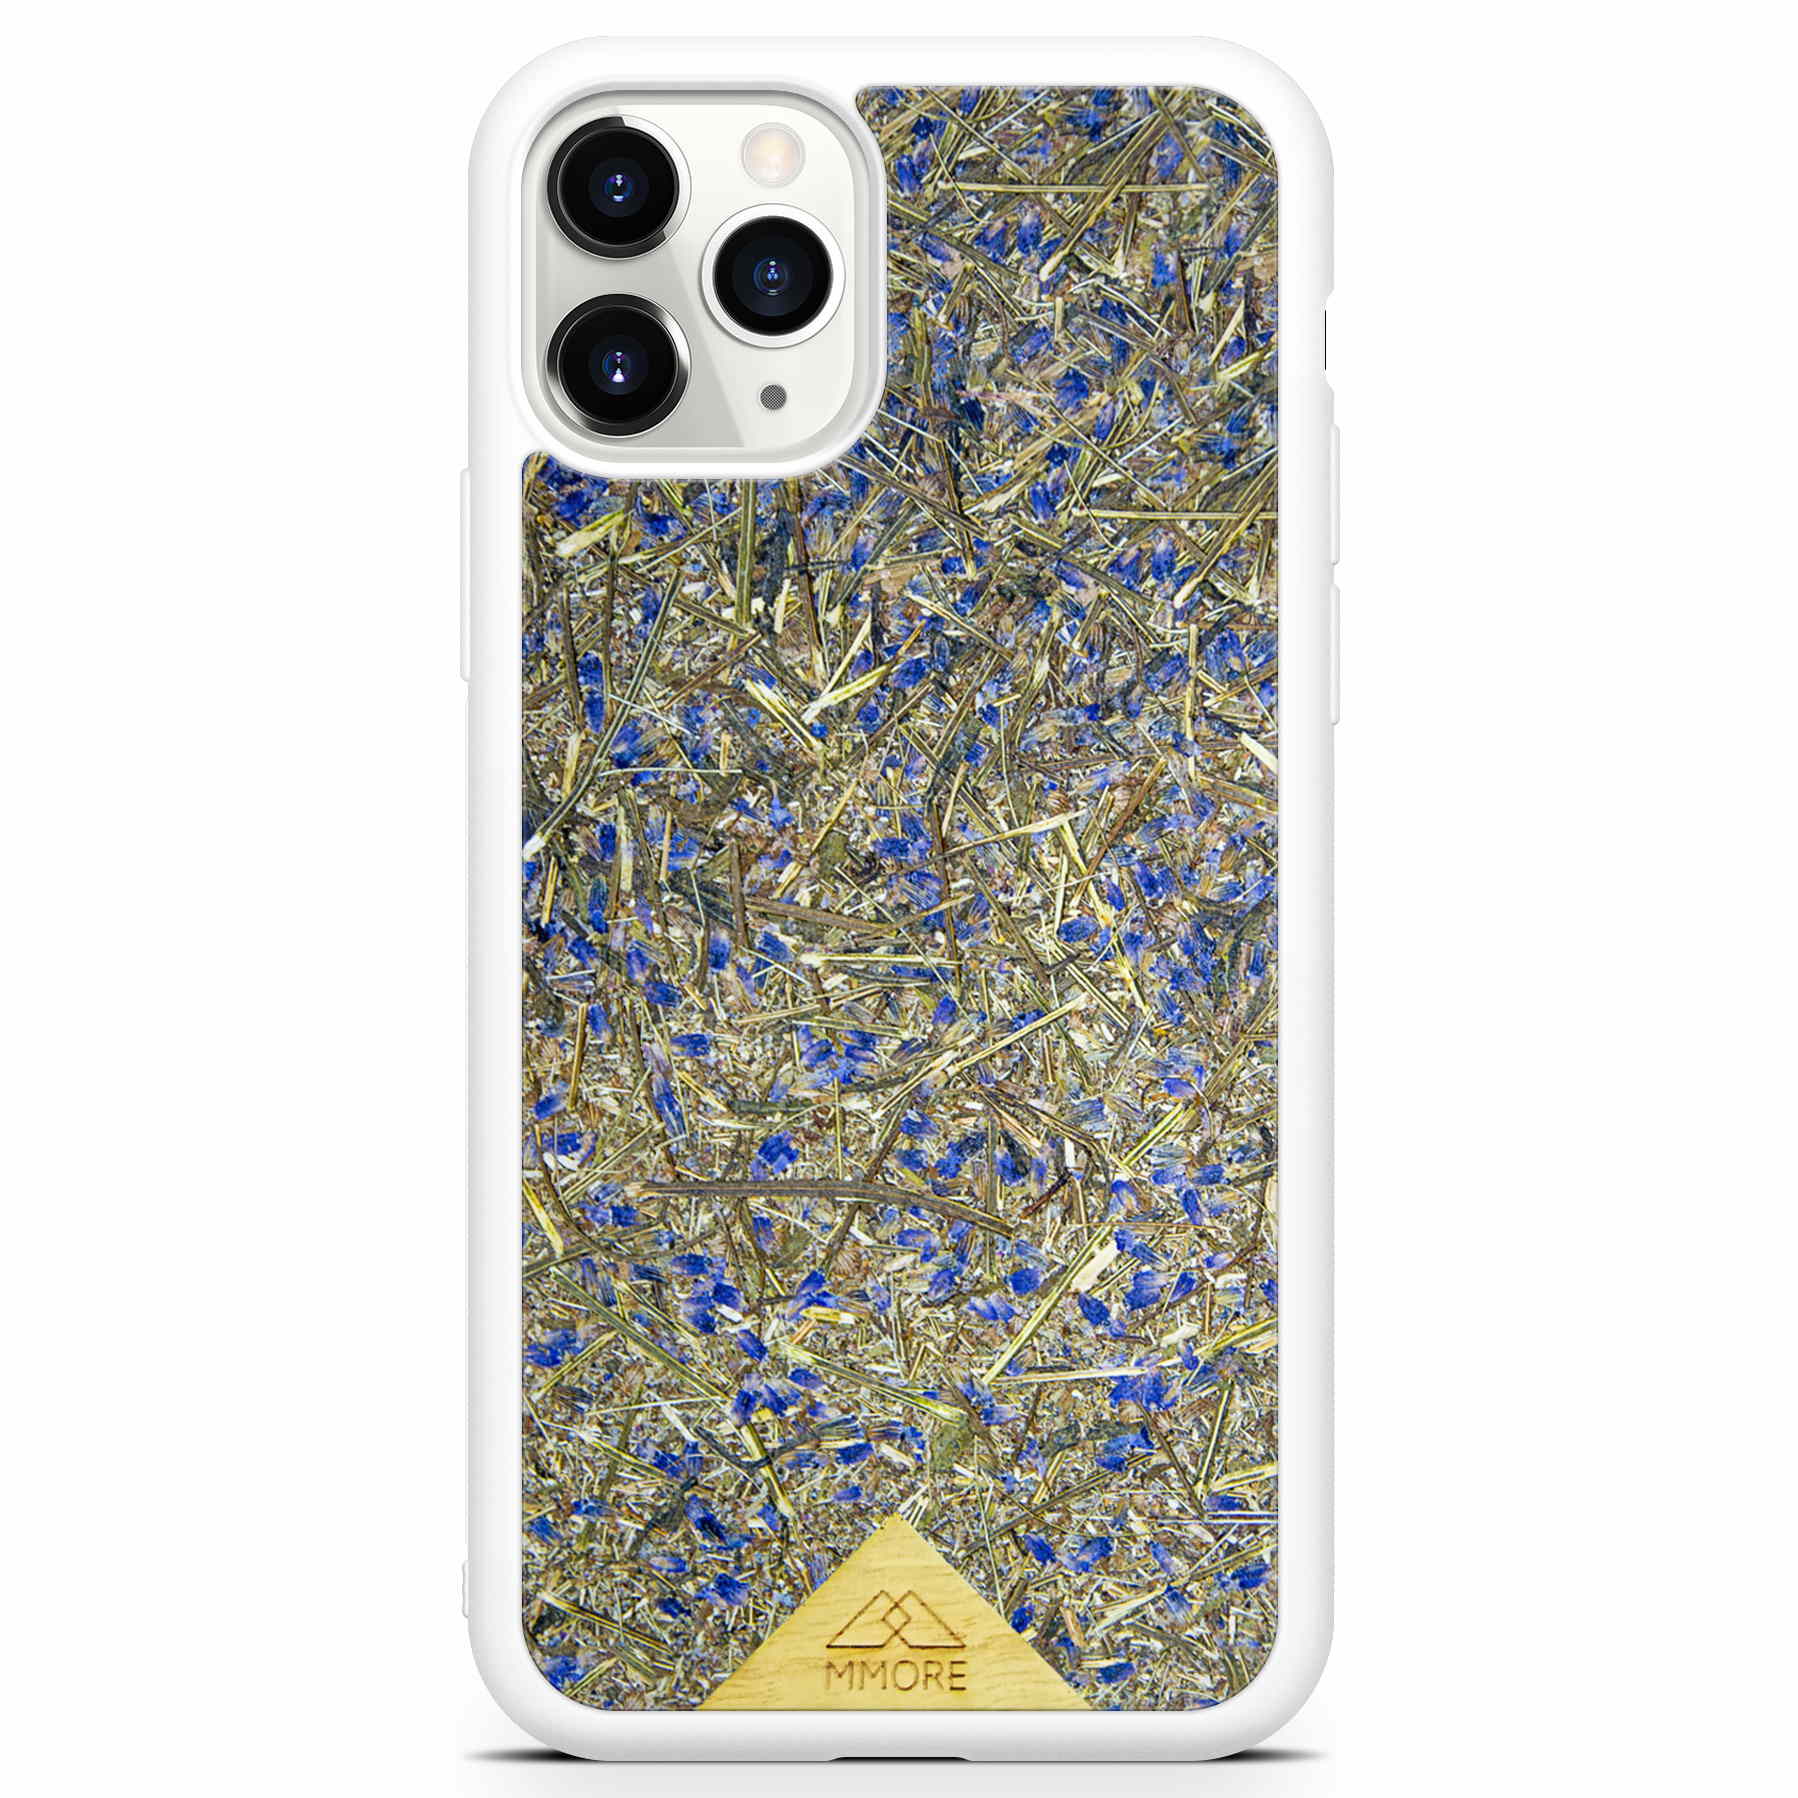 Чехол для телефона с белой рамкой и бледно-лиловым цветом для iPhone 11 Pro